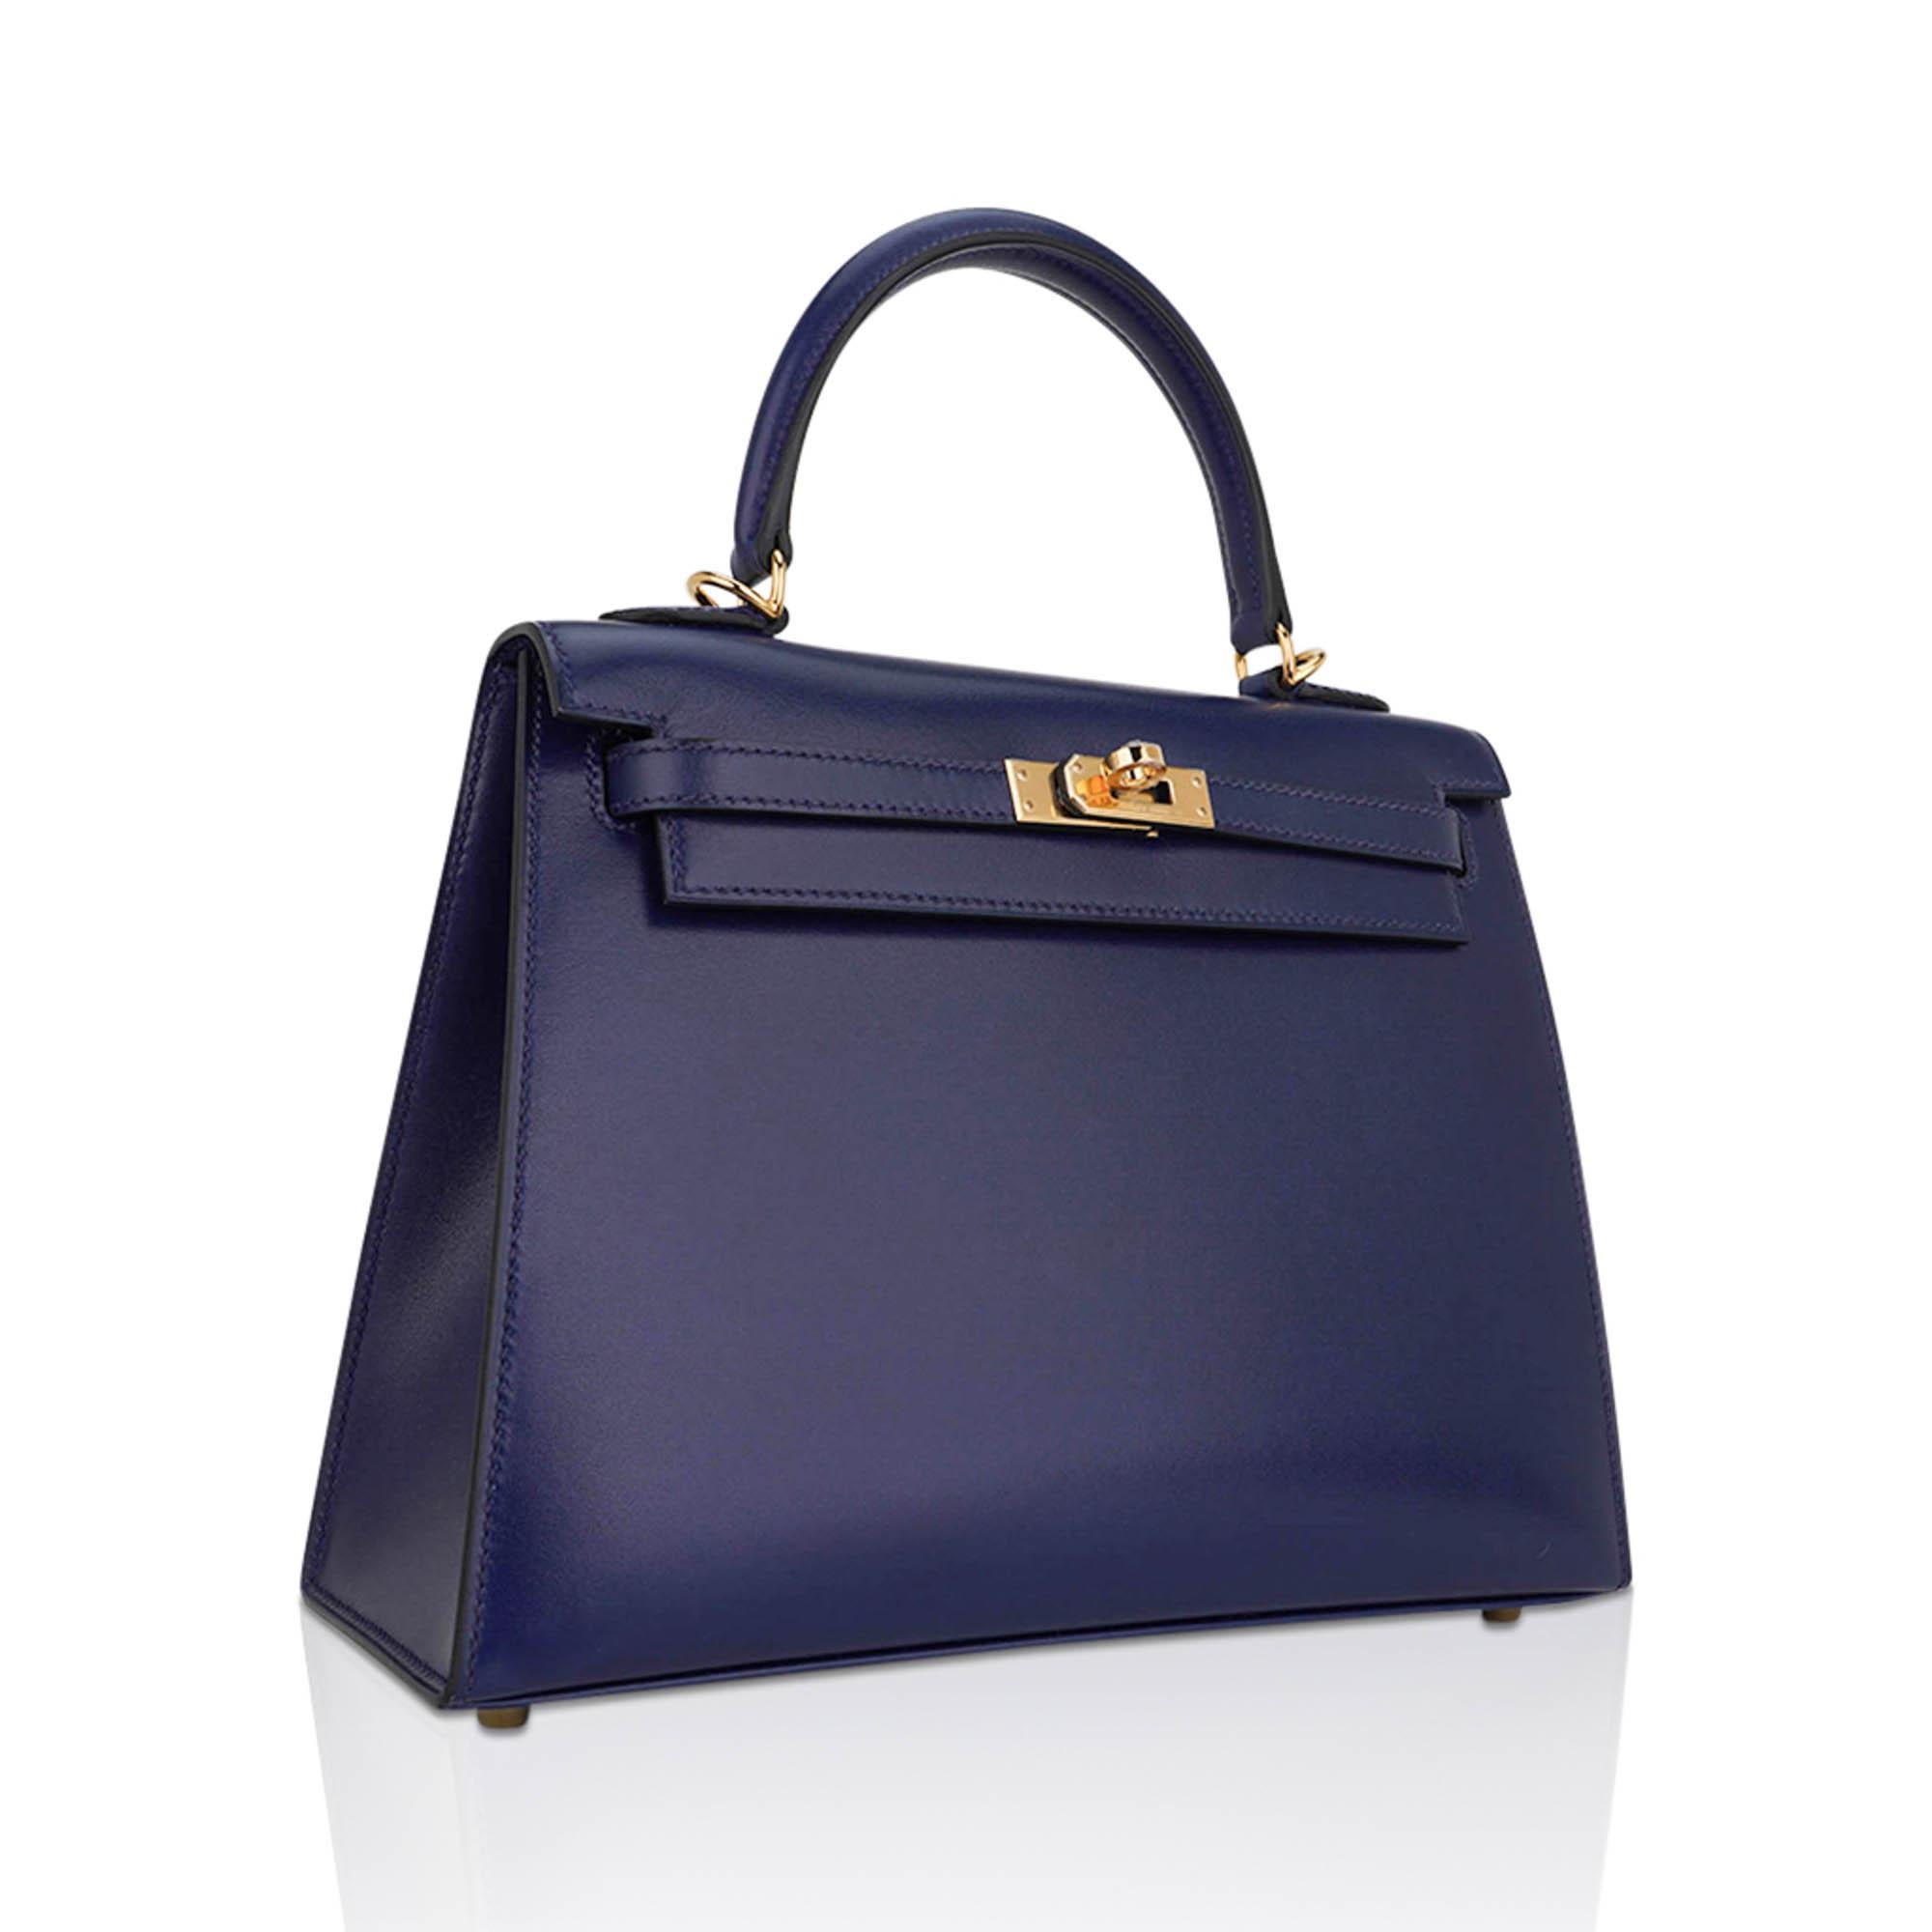 Mightychic vous propose un sac Hermes Kelly Sellier 25 en cuir Blue Sapphire Box.
Considéré comme l'un des cuirs patrimoniaux les plus collectionnables d'Hermès, cette beauté intemporelle exsude un style chic.
Le bleu saphir est saturé et peut aller